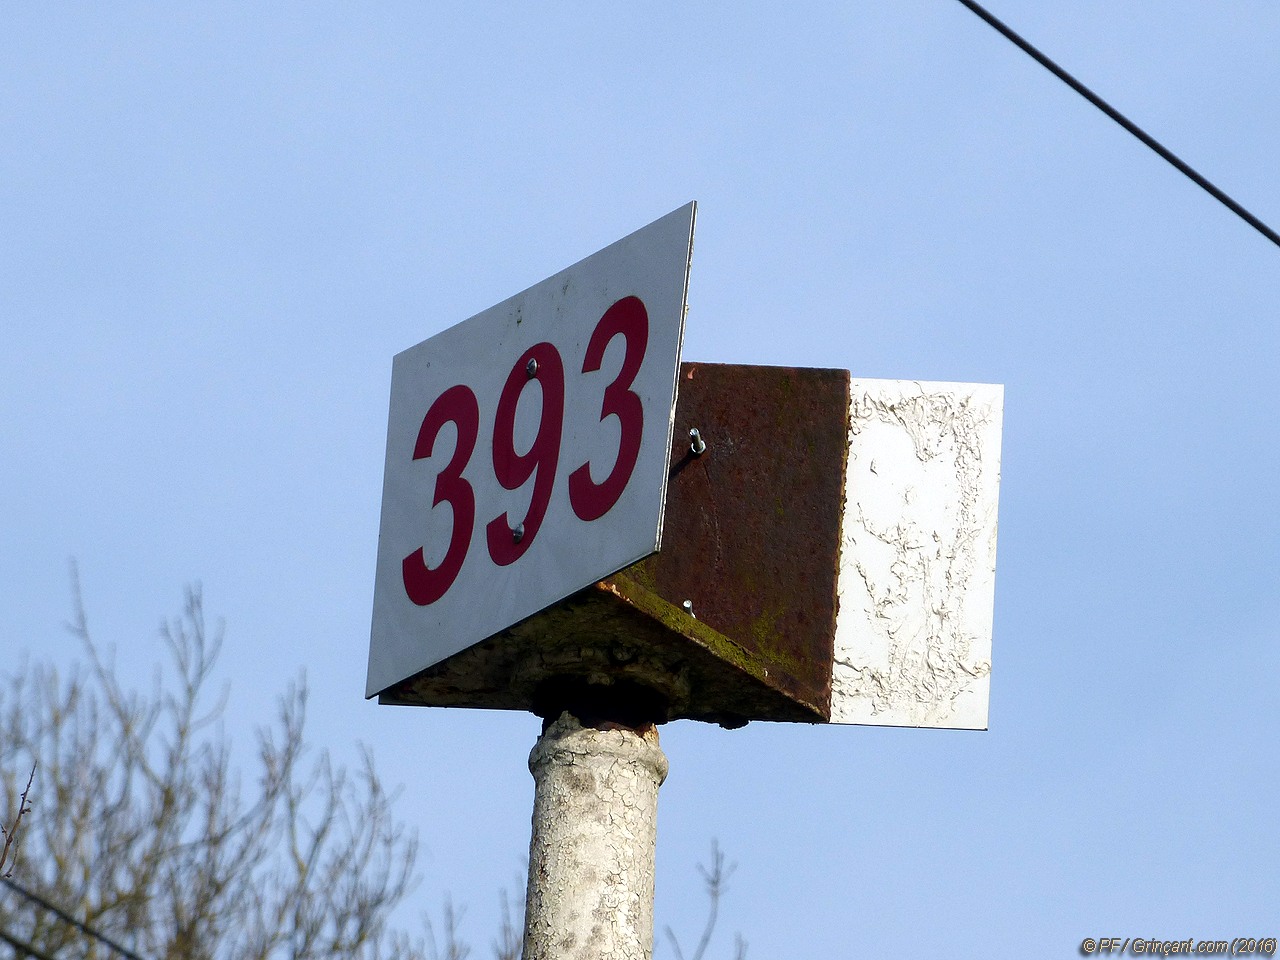 Panneau "393" sur voie ferrée